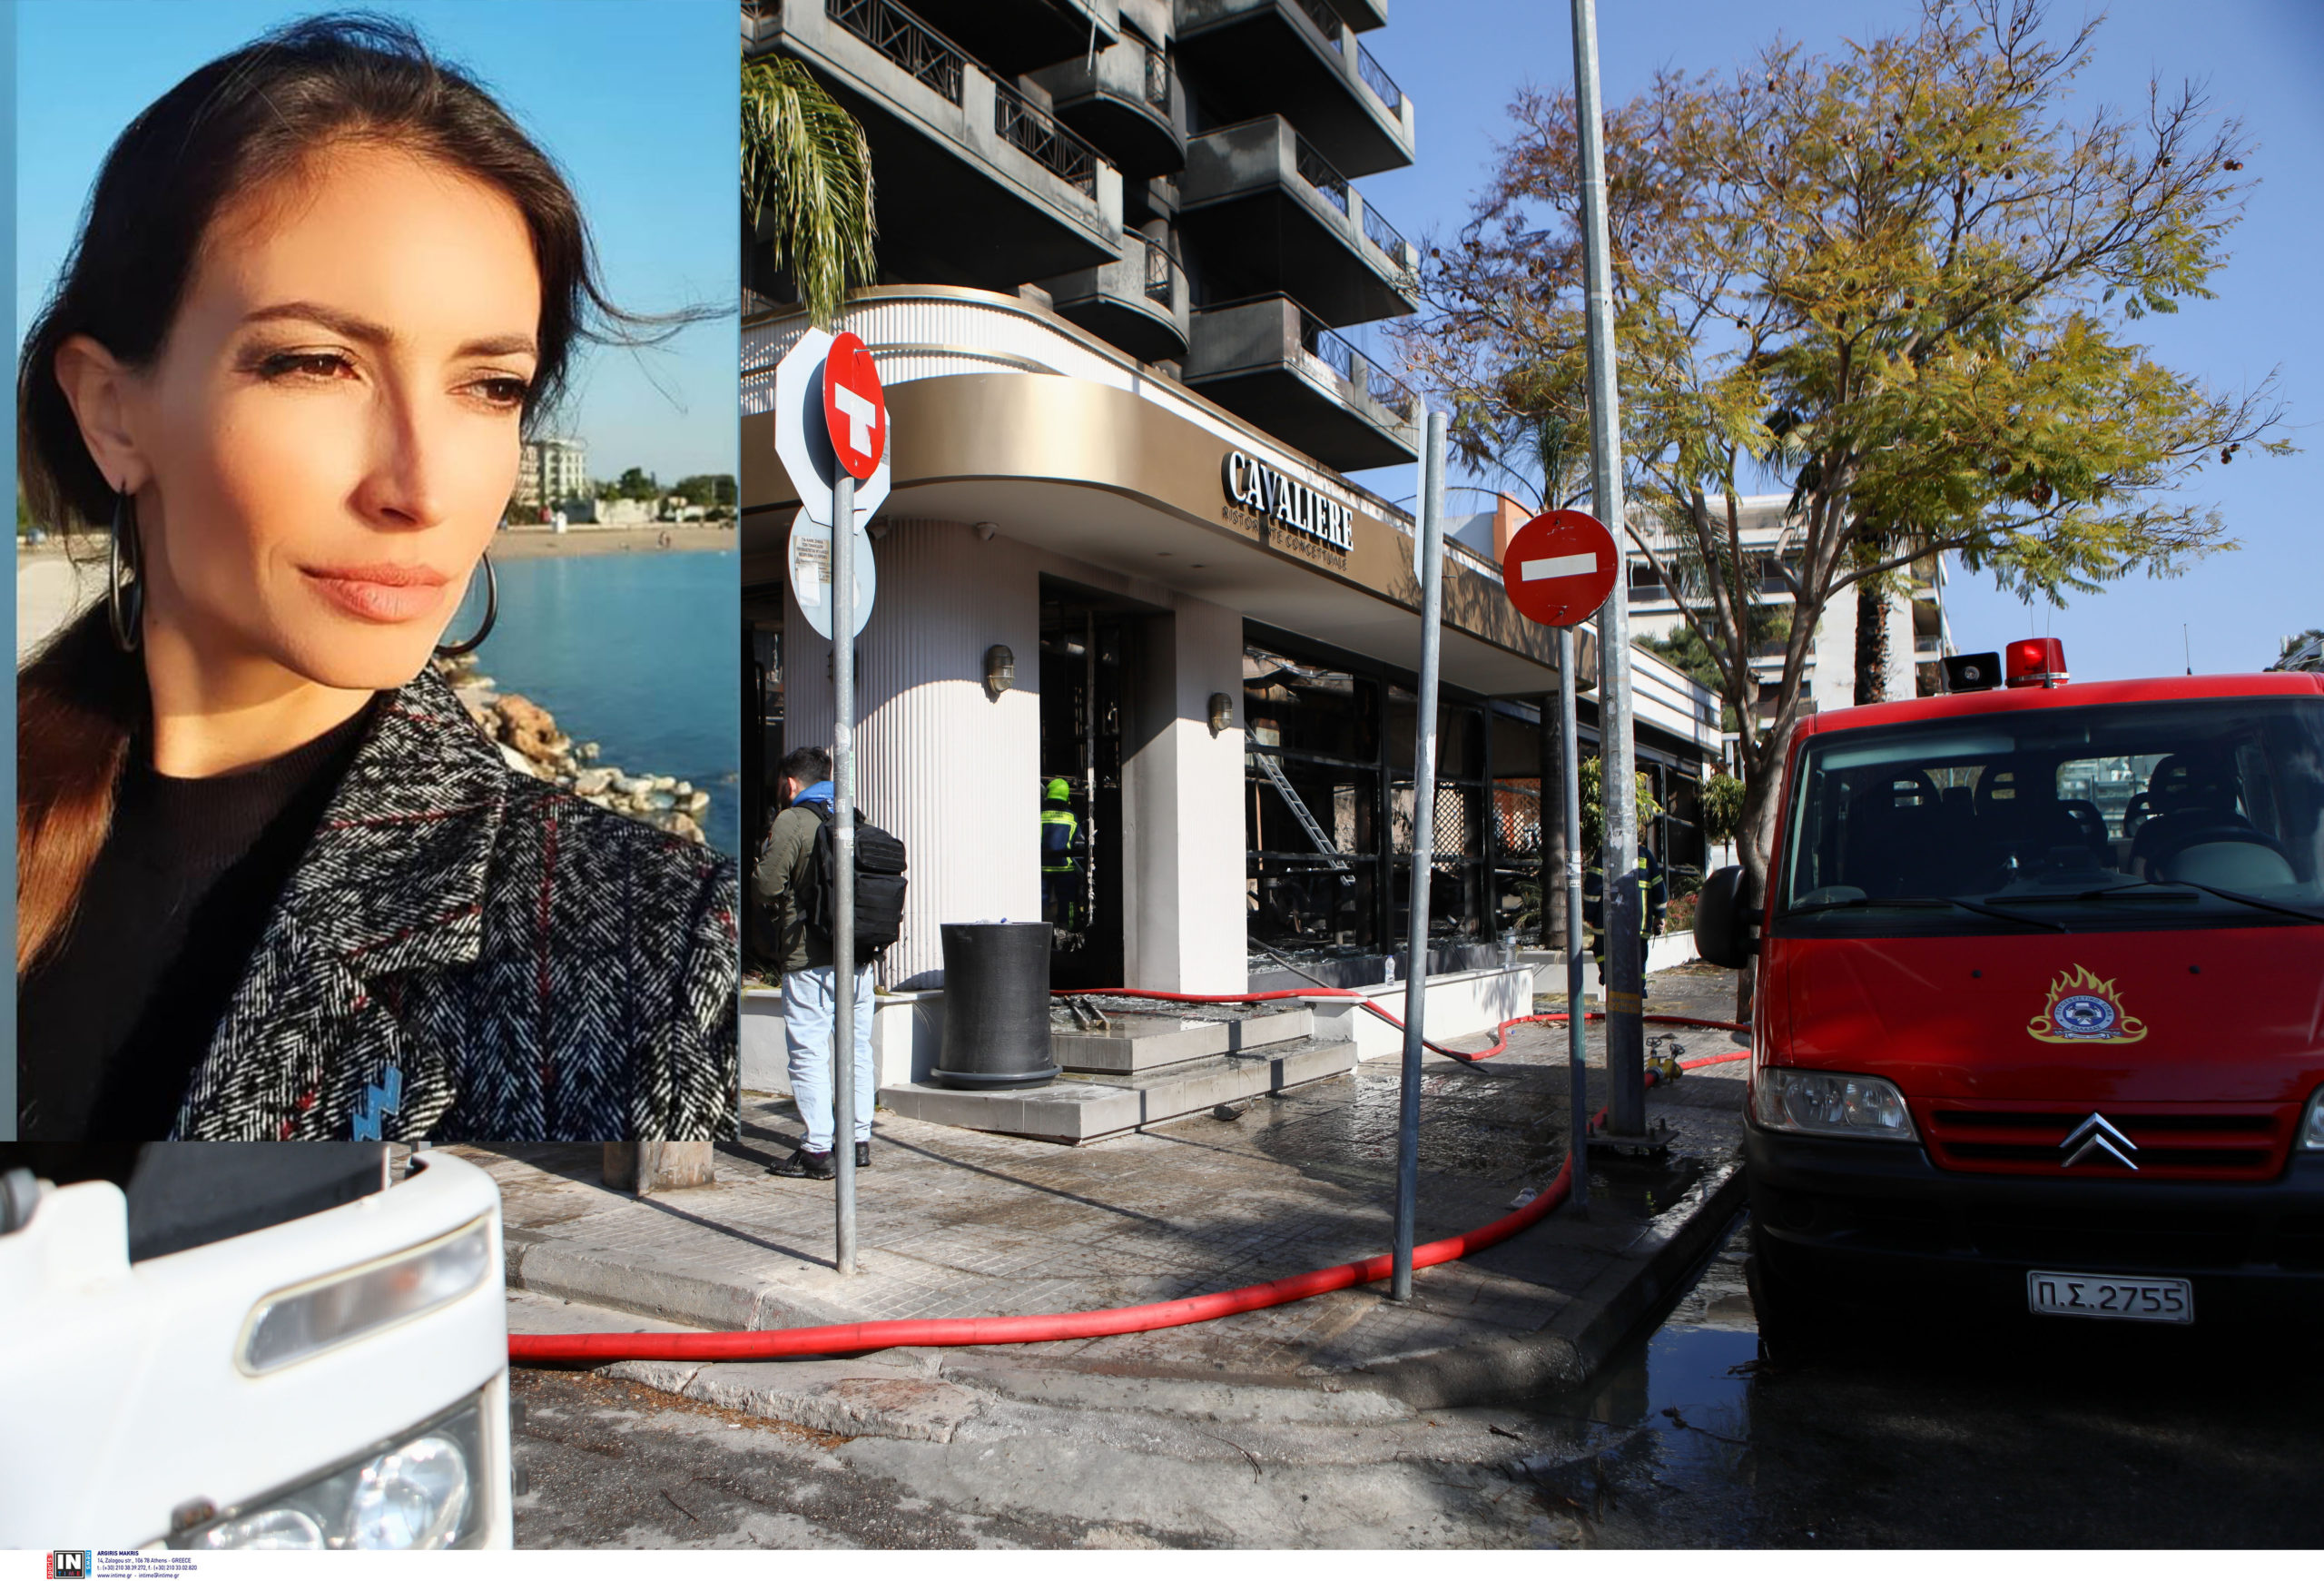 Μάρα Δαρμουσλή: Μιλά στο enikos.gr για τον εμπρησμό στο Cavaliere – «Χάθηκαν οι κόποι μιας ζωής του συζύγου μου»